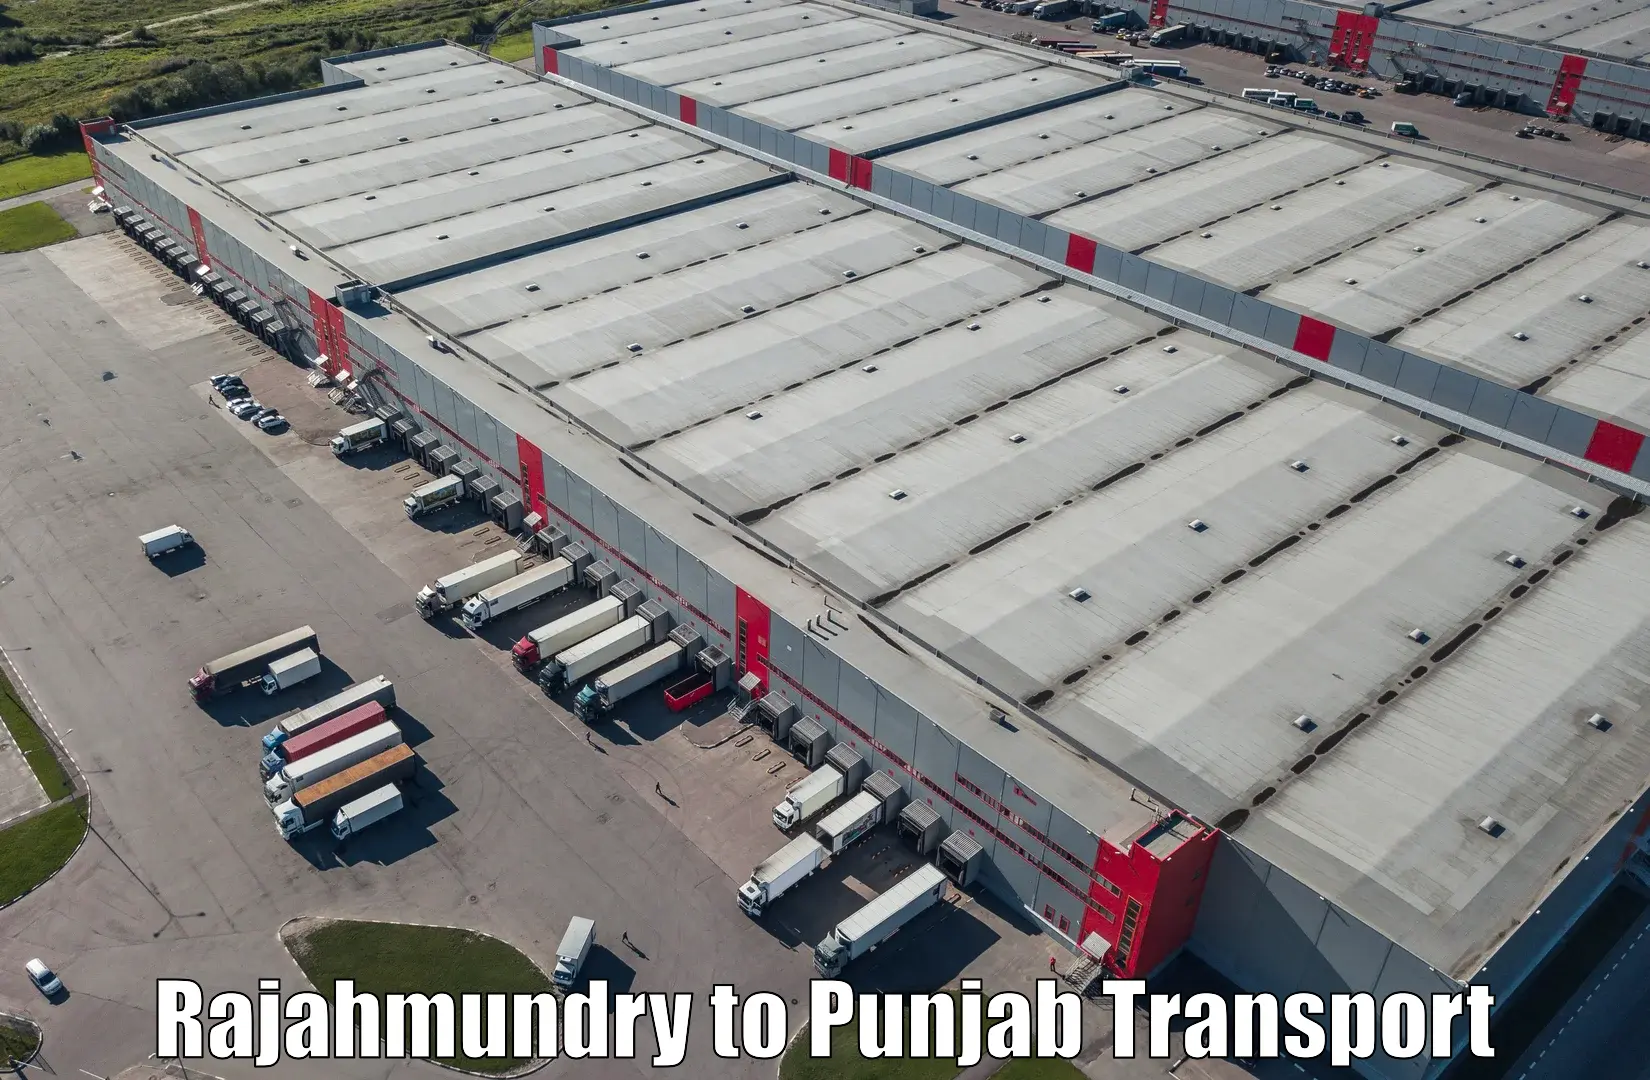 Parcel transport services Rajahmundry to Punjab